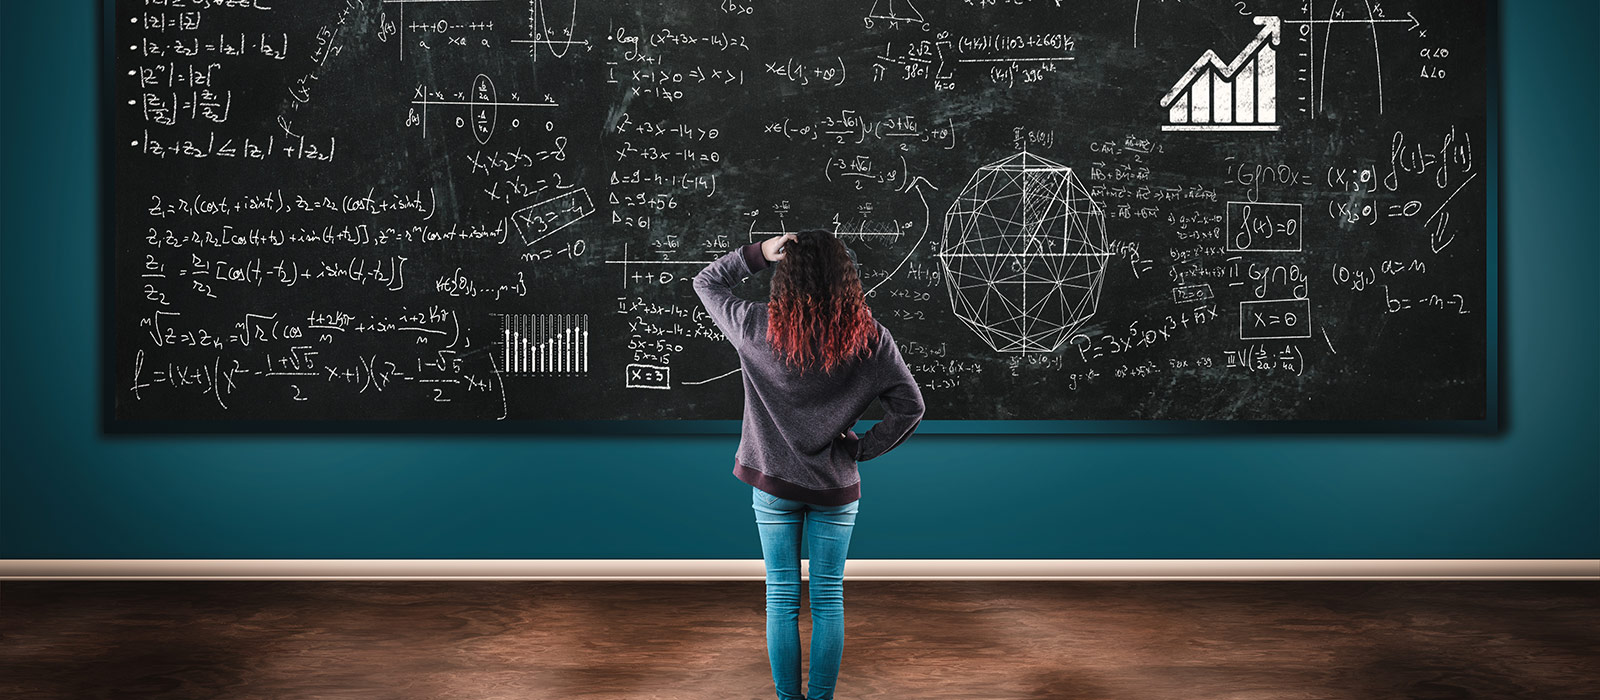 一个困惑的学生站在一块写满数学公式的黑板前。